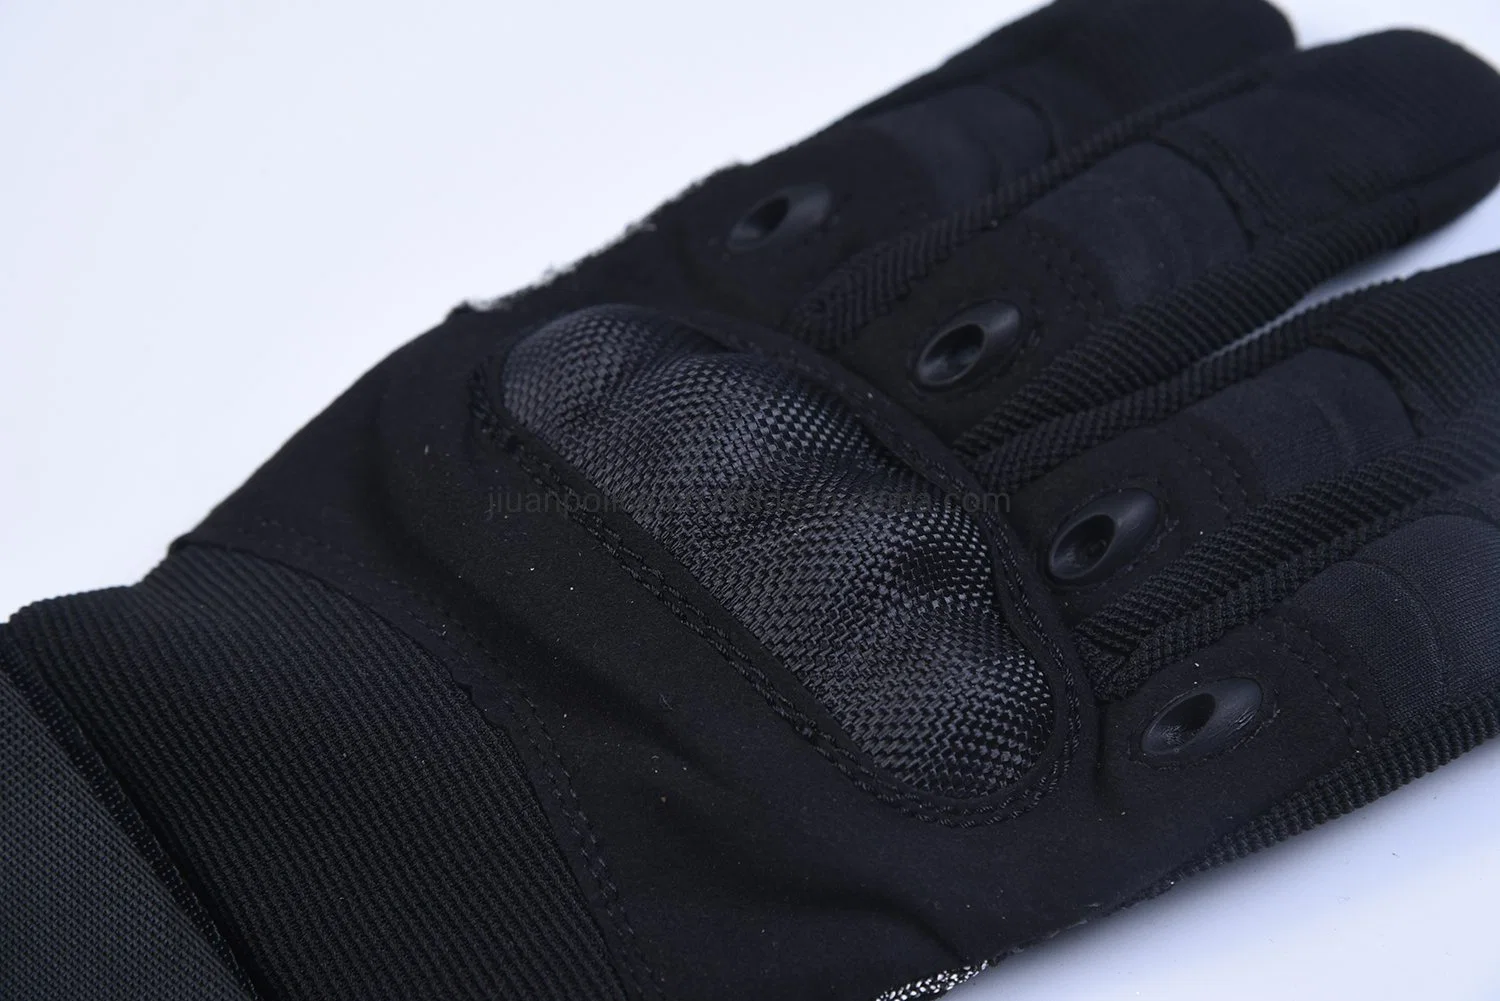 Premium Cut Level 5 Anti Cut Anti Slip Anti Impact Military Tactical Gloves